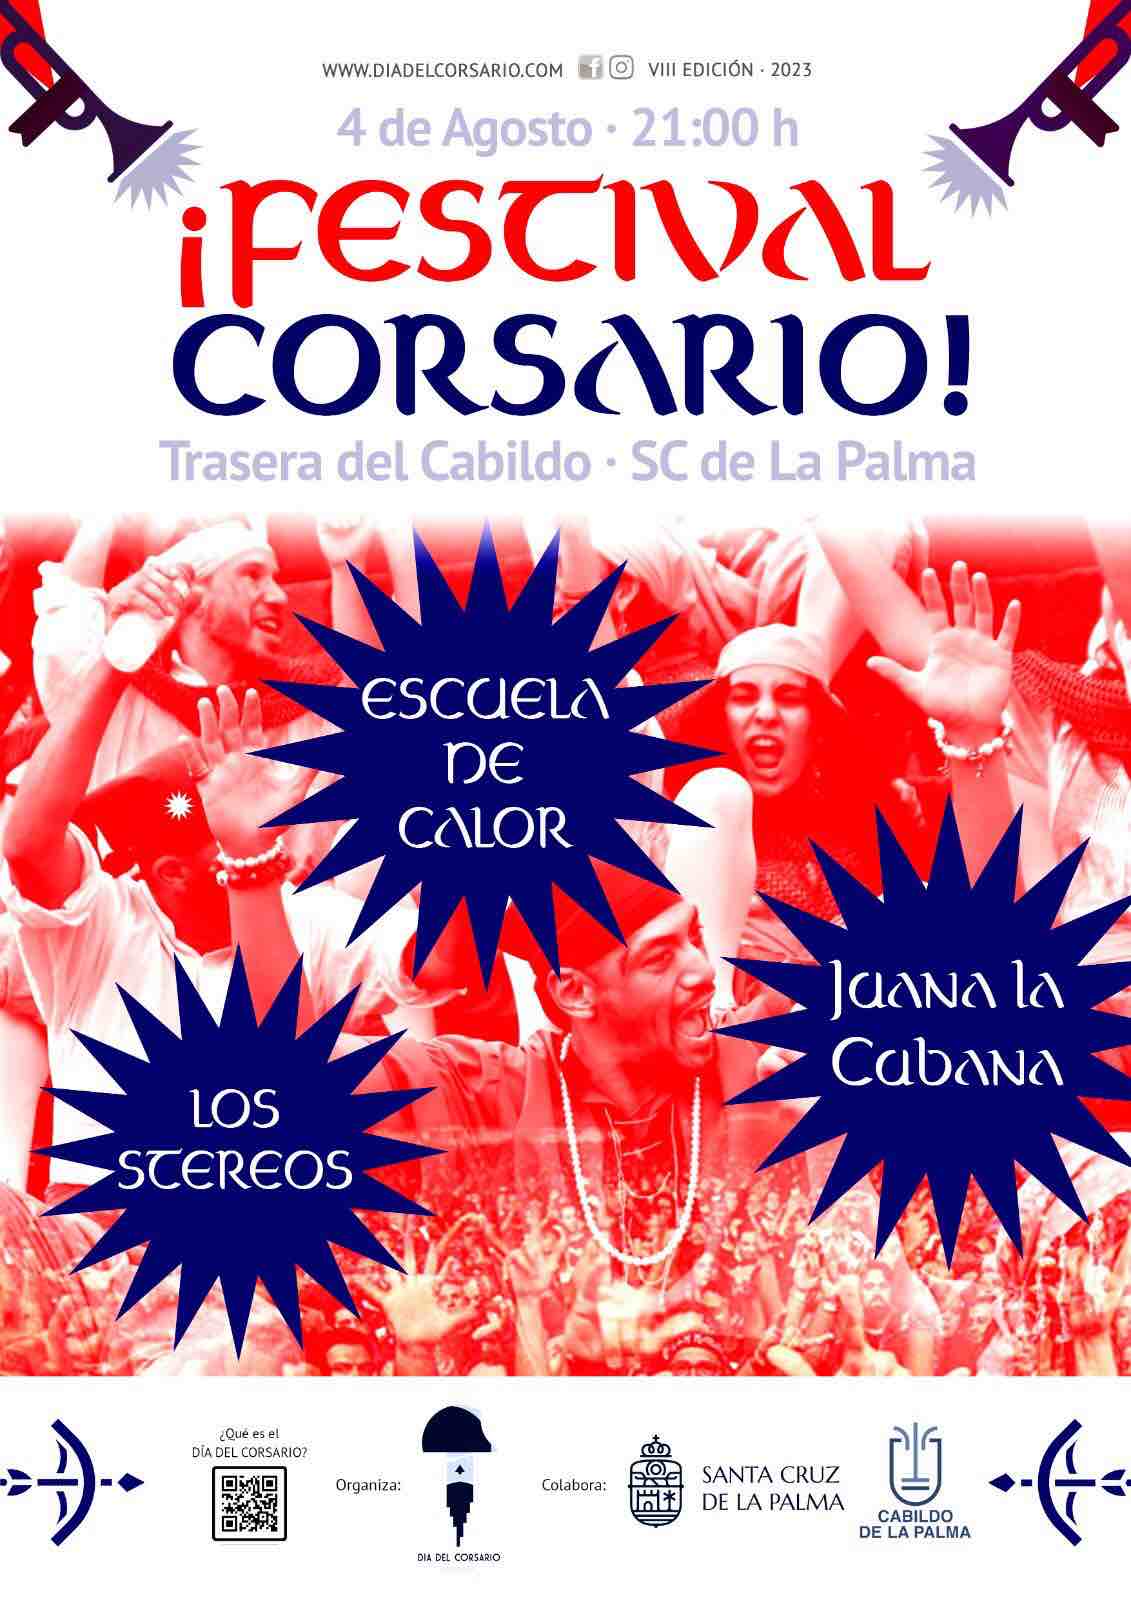 El festival más corsario vuelve a Santa Cruz de La Palma el 4 de agosto